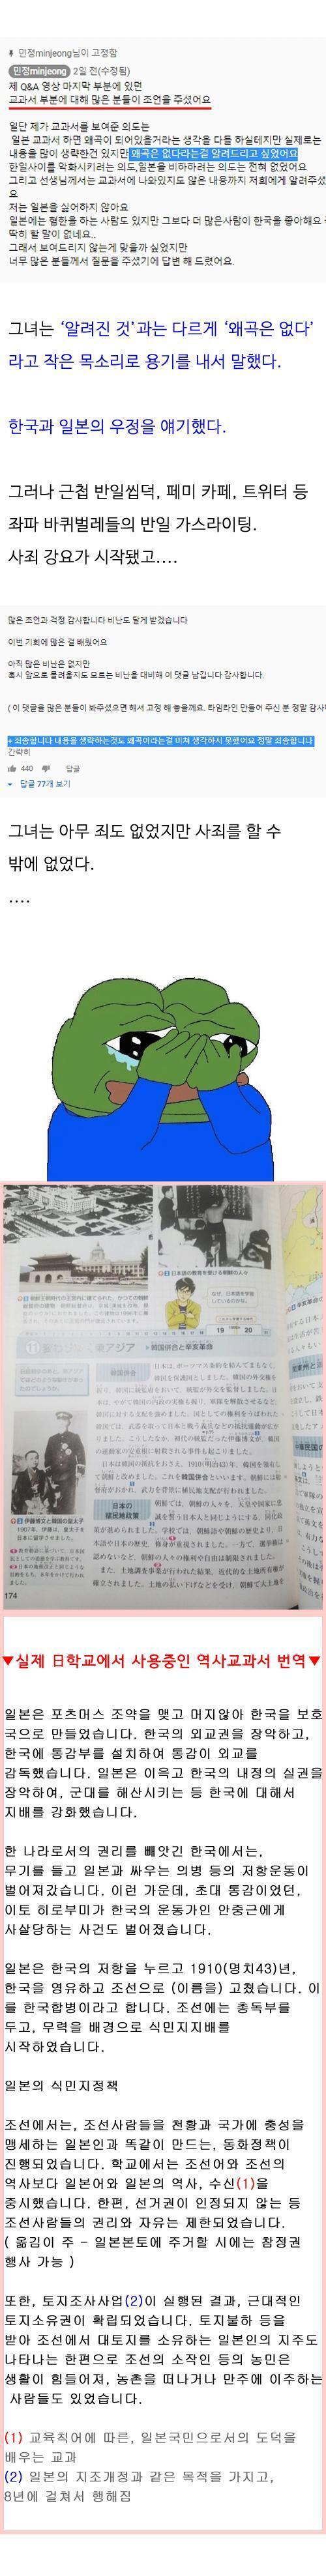 일본 고등학교 재학중인 한국 여학생이 의외로 일본 역사 교과서에 한국사 관련 왜곡이 없고 교사도 독립운동에 대한 탄압을 이야기하였다는 영상을 올렸다가 사과문 올렸대 생략한건